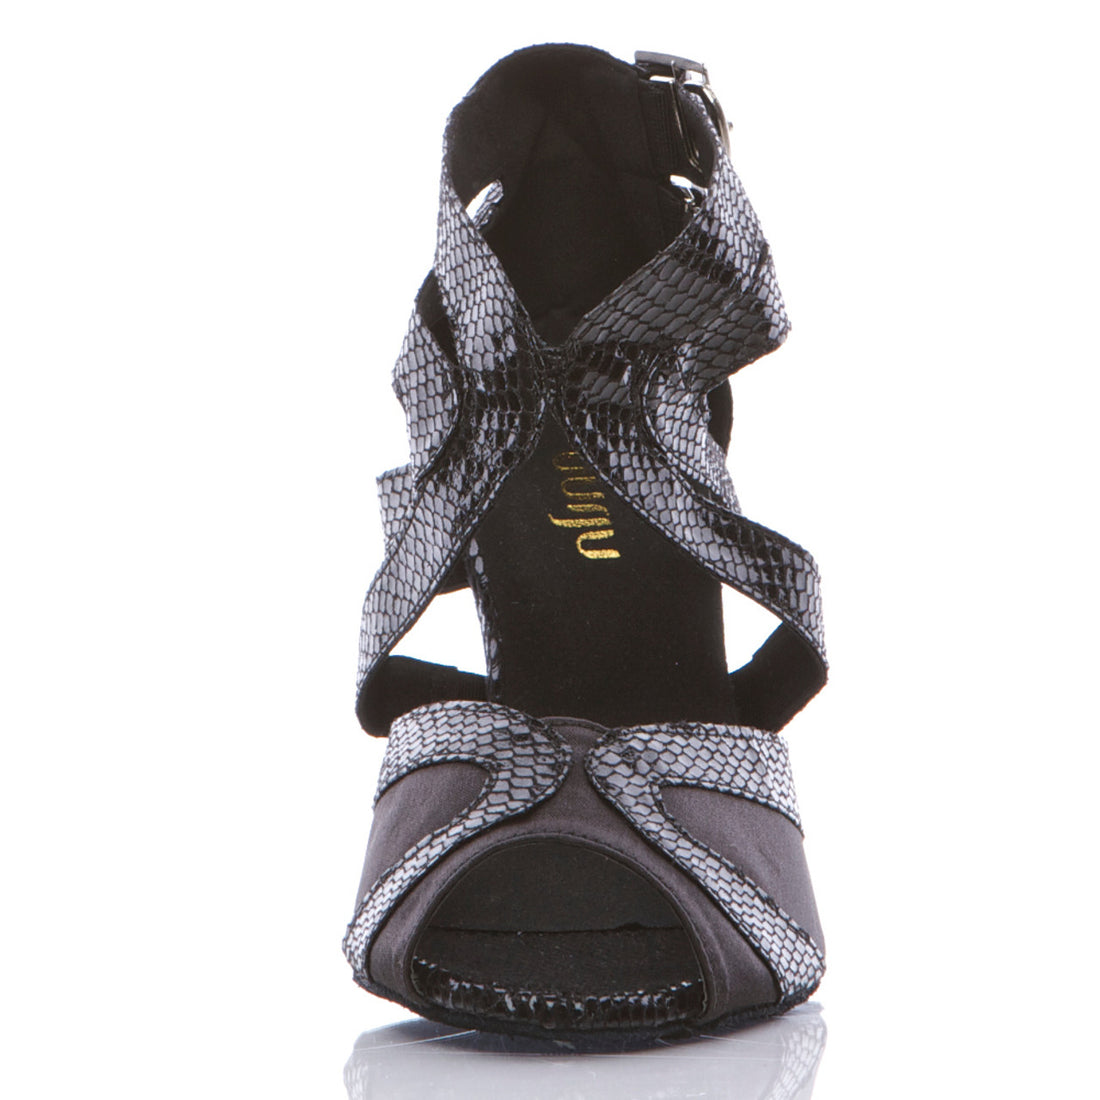 Isabel - Black Metallic Open Toe Cross Strap Stiletto Dance Shoes (Suede Sole)